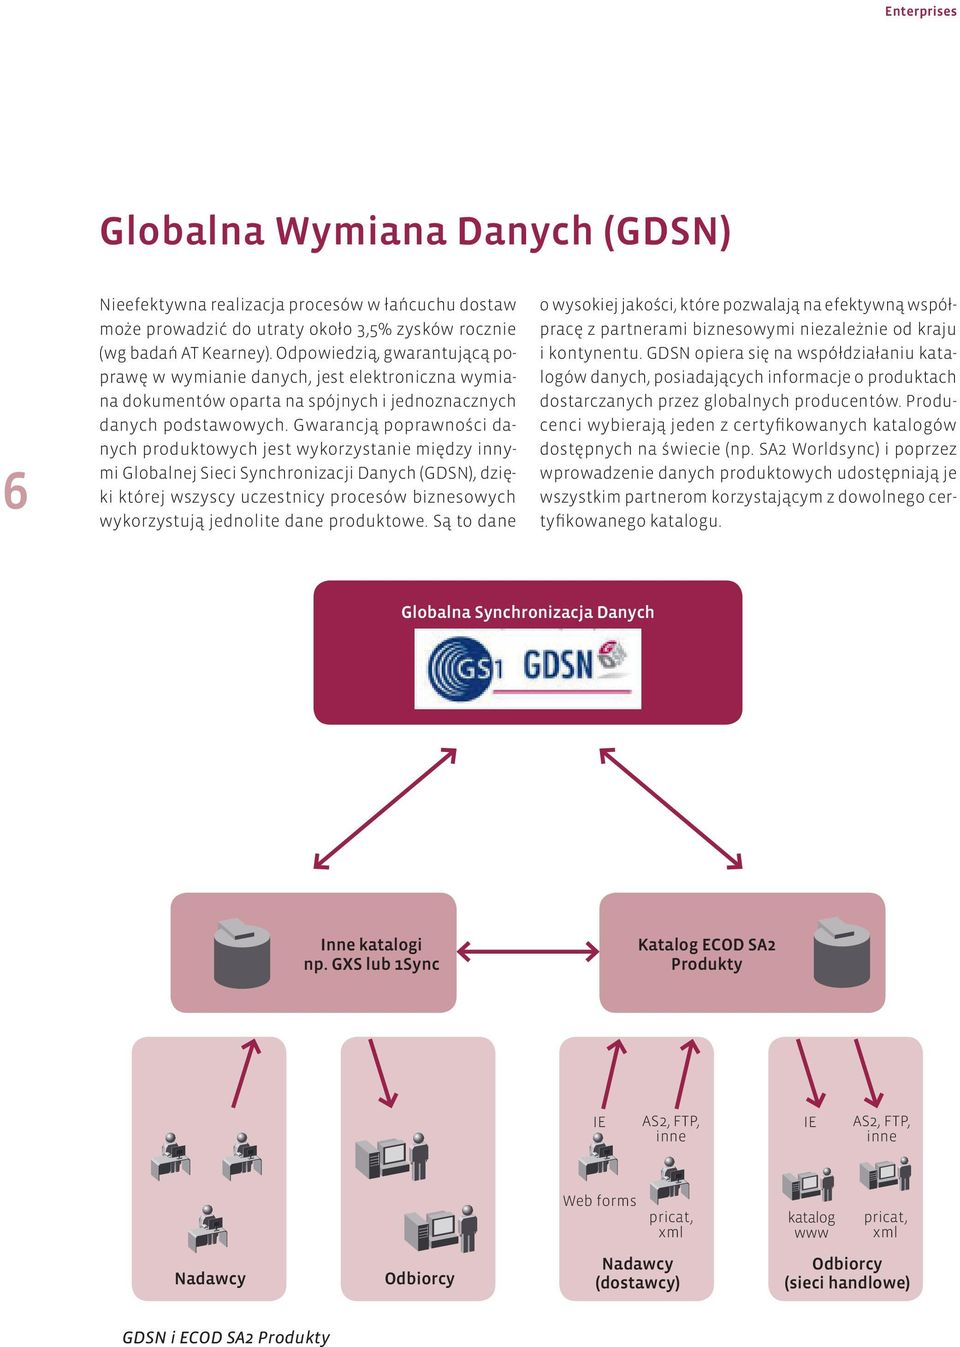 Gwarancją poprawności danych produktowych jest wykorzystanie między innymi Globalnej Sieci Synchronizacji Danych (GDSN), dzięki której wszyscy uczestnicy procesów biznesowych wykorzystują jednolite